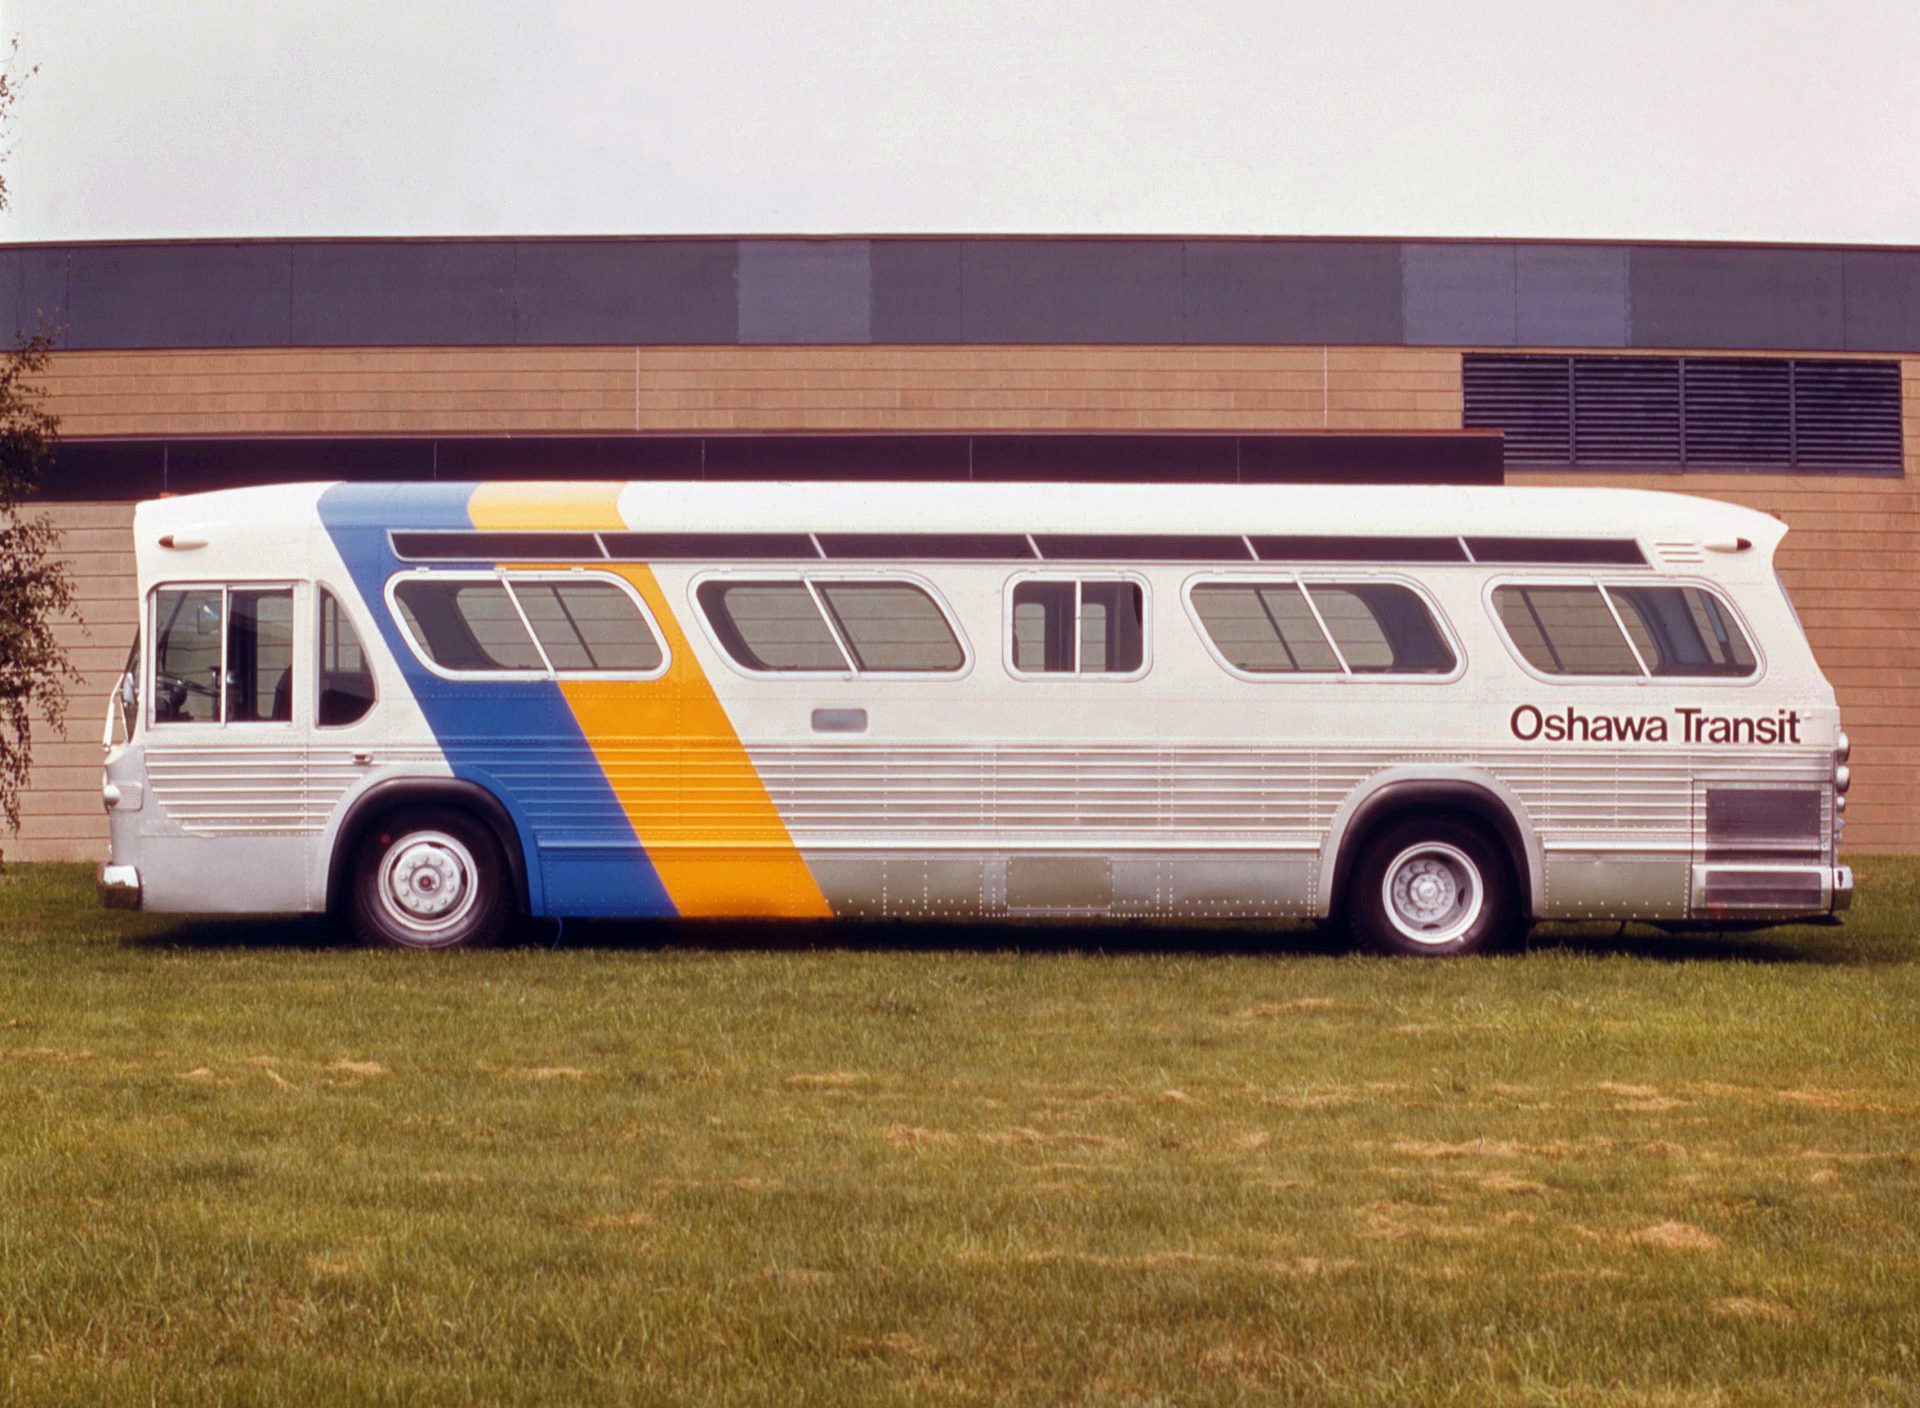 Oshawa Transit Livery - Canada Modern